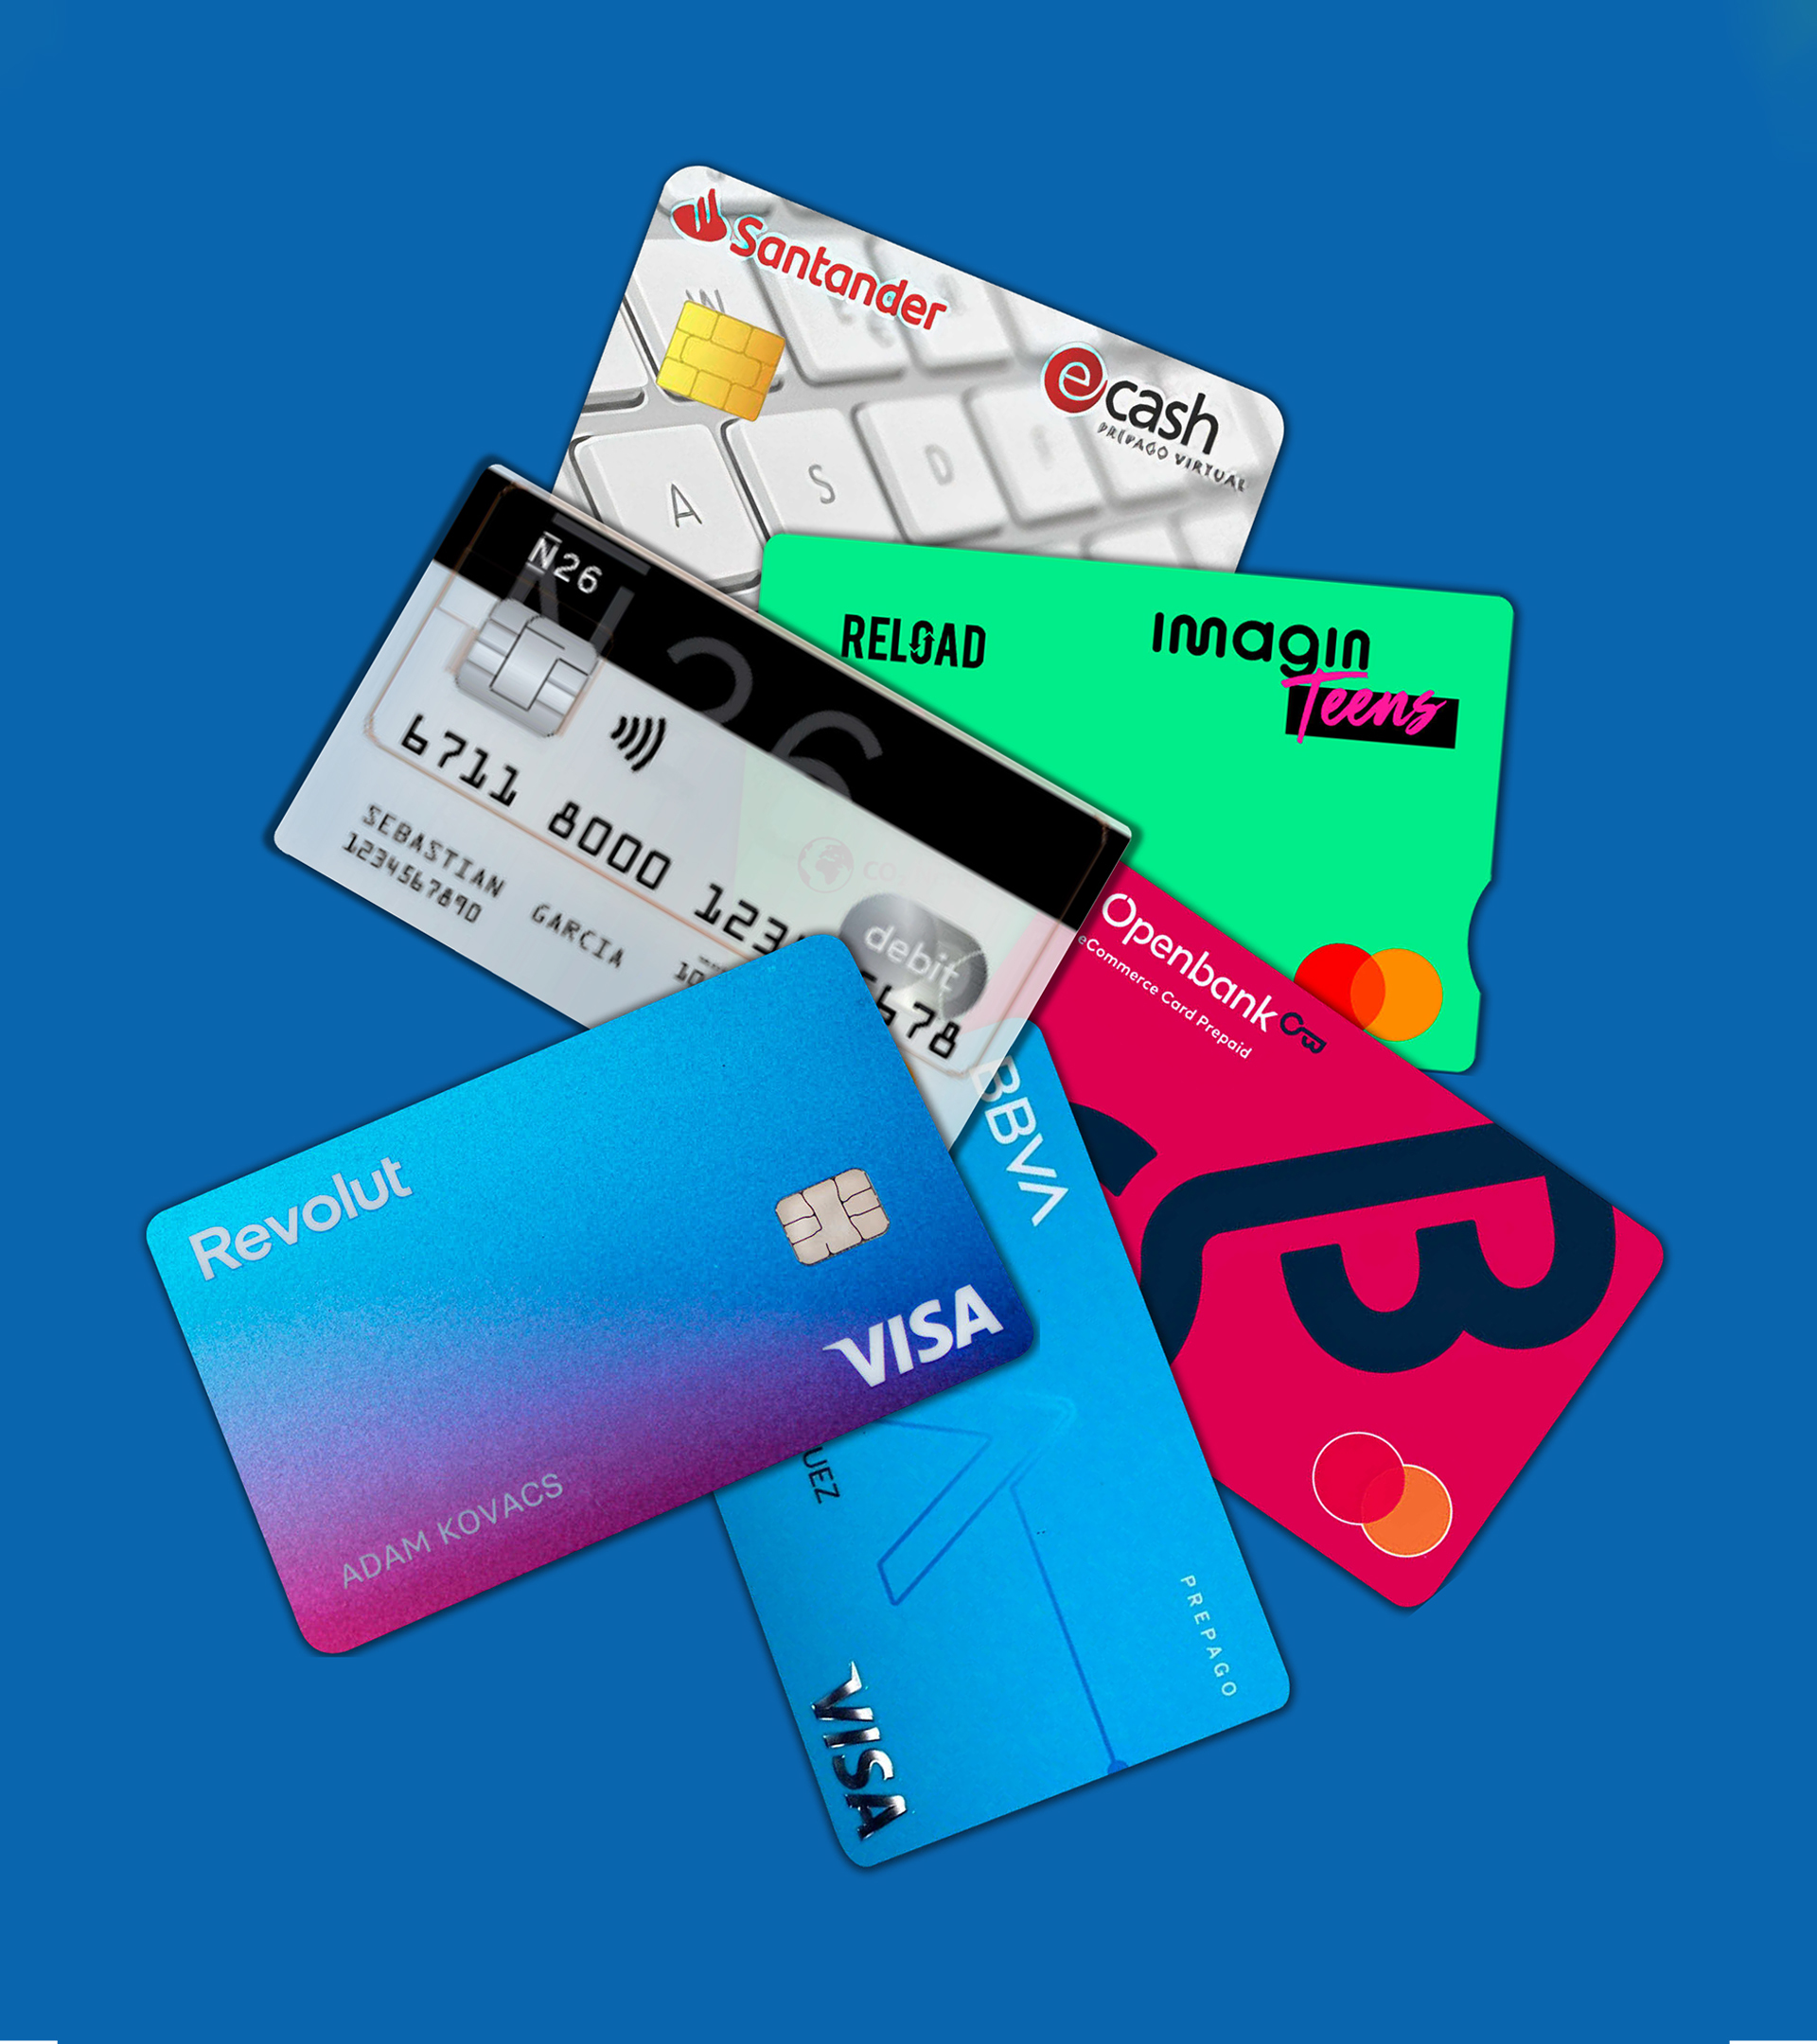 Recargar y gastar: así son las tarjetas de crédito prepago que se